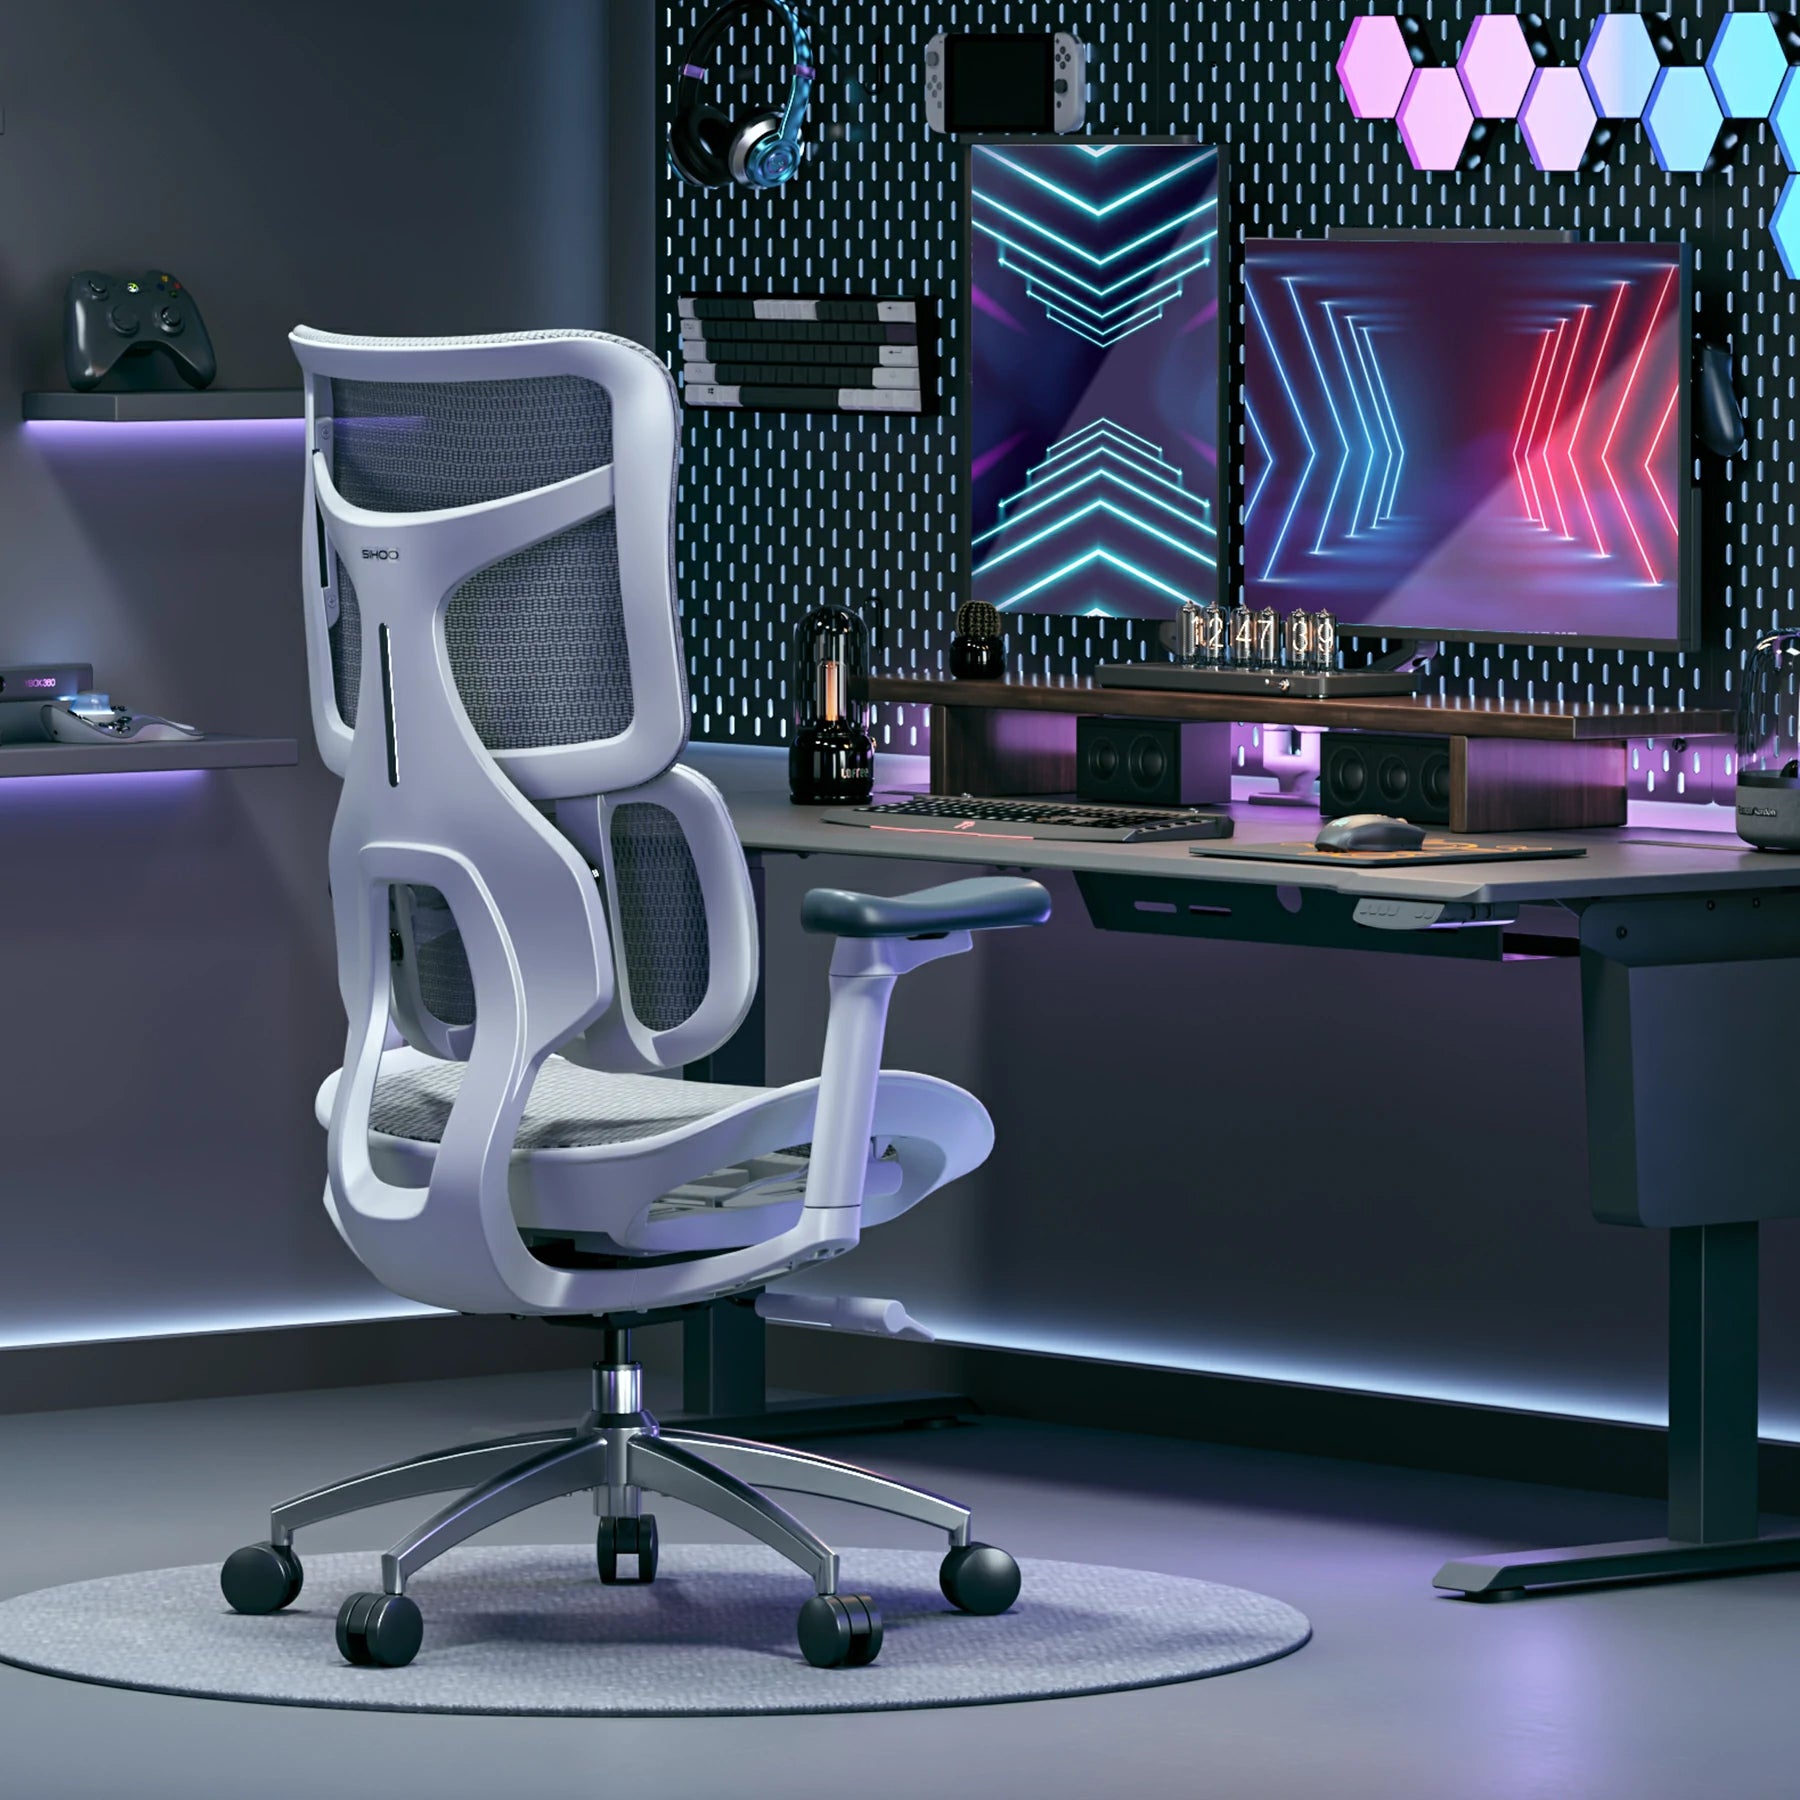 (nouveau) Sihoo Doro S100 chaise de bureau ergonomique avec Double Support lombaire dynamique